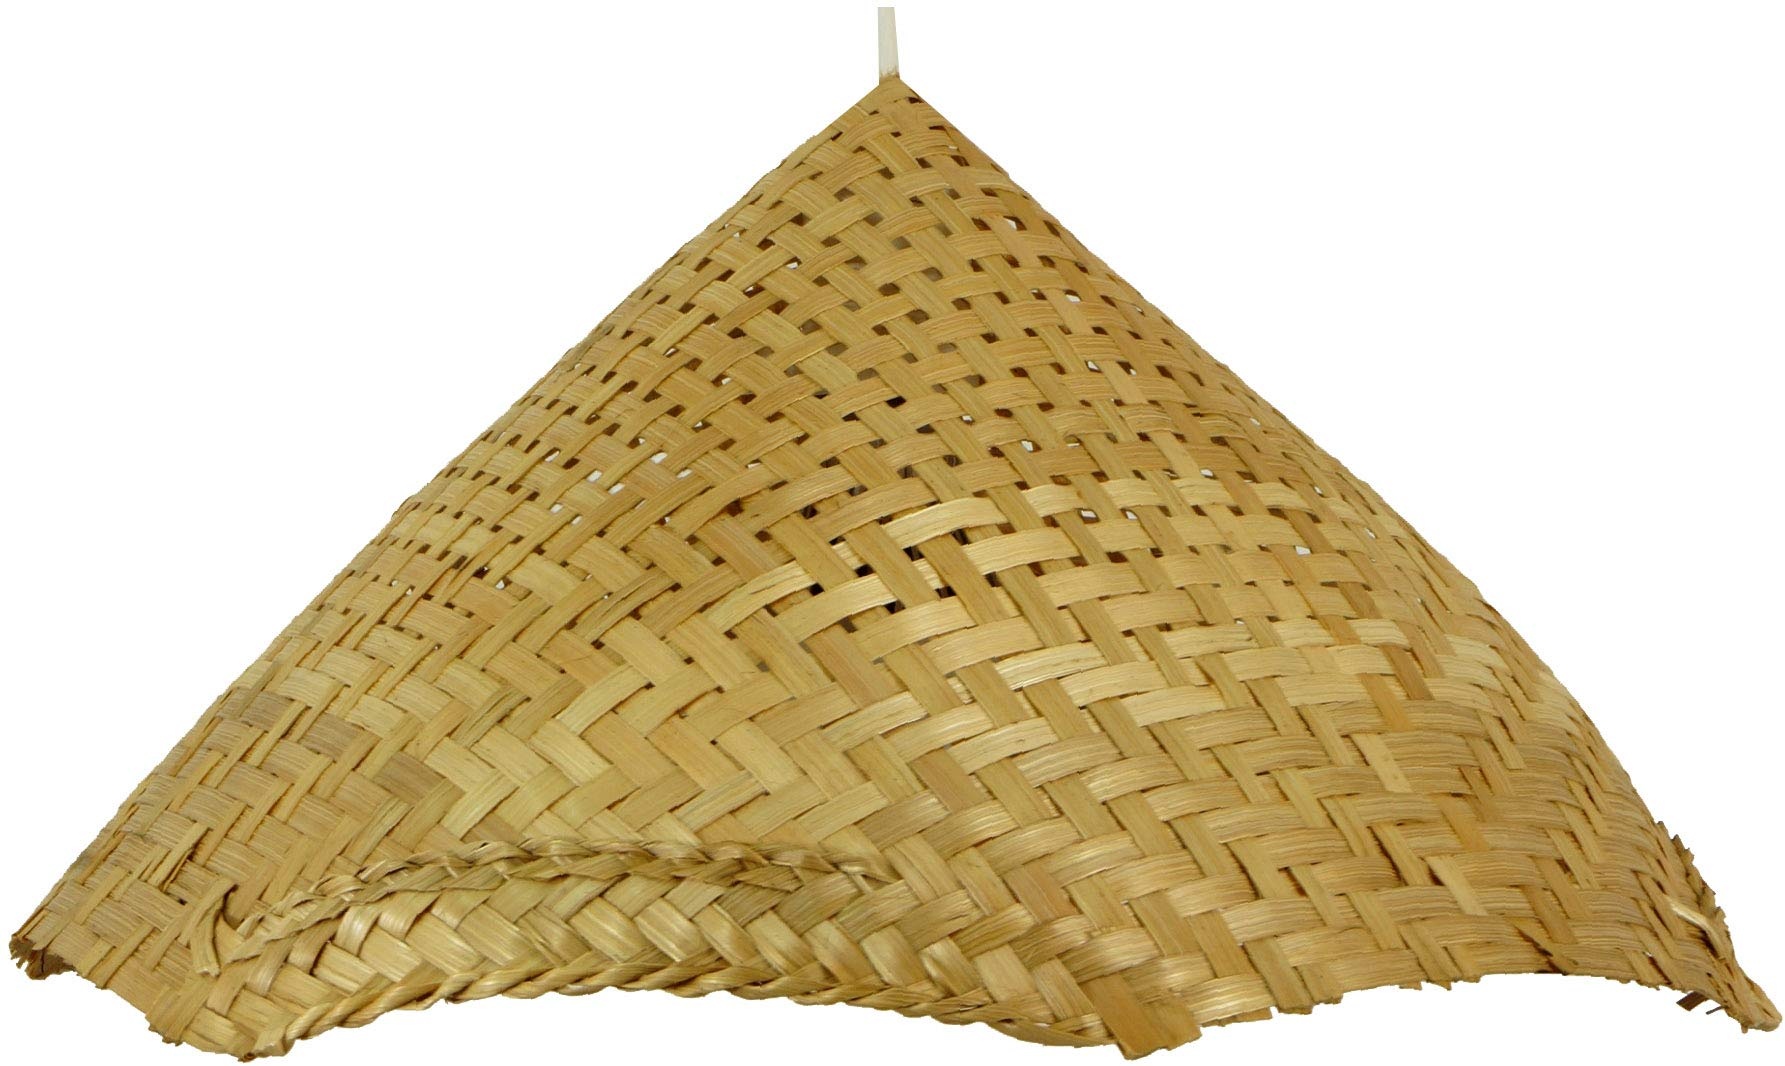 GURU SHOP Deckenlampe/Deckenleuchte, in Bali Handgemacht aus Naturmaterial, Bambus - Modell Rice Field, Baumwollstoff, 20x41x38 cm, Hängeleuchten aus Natürlichen Materialien